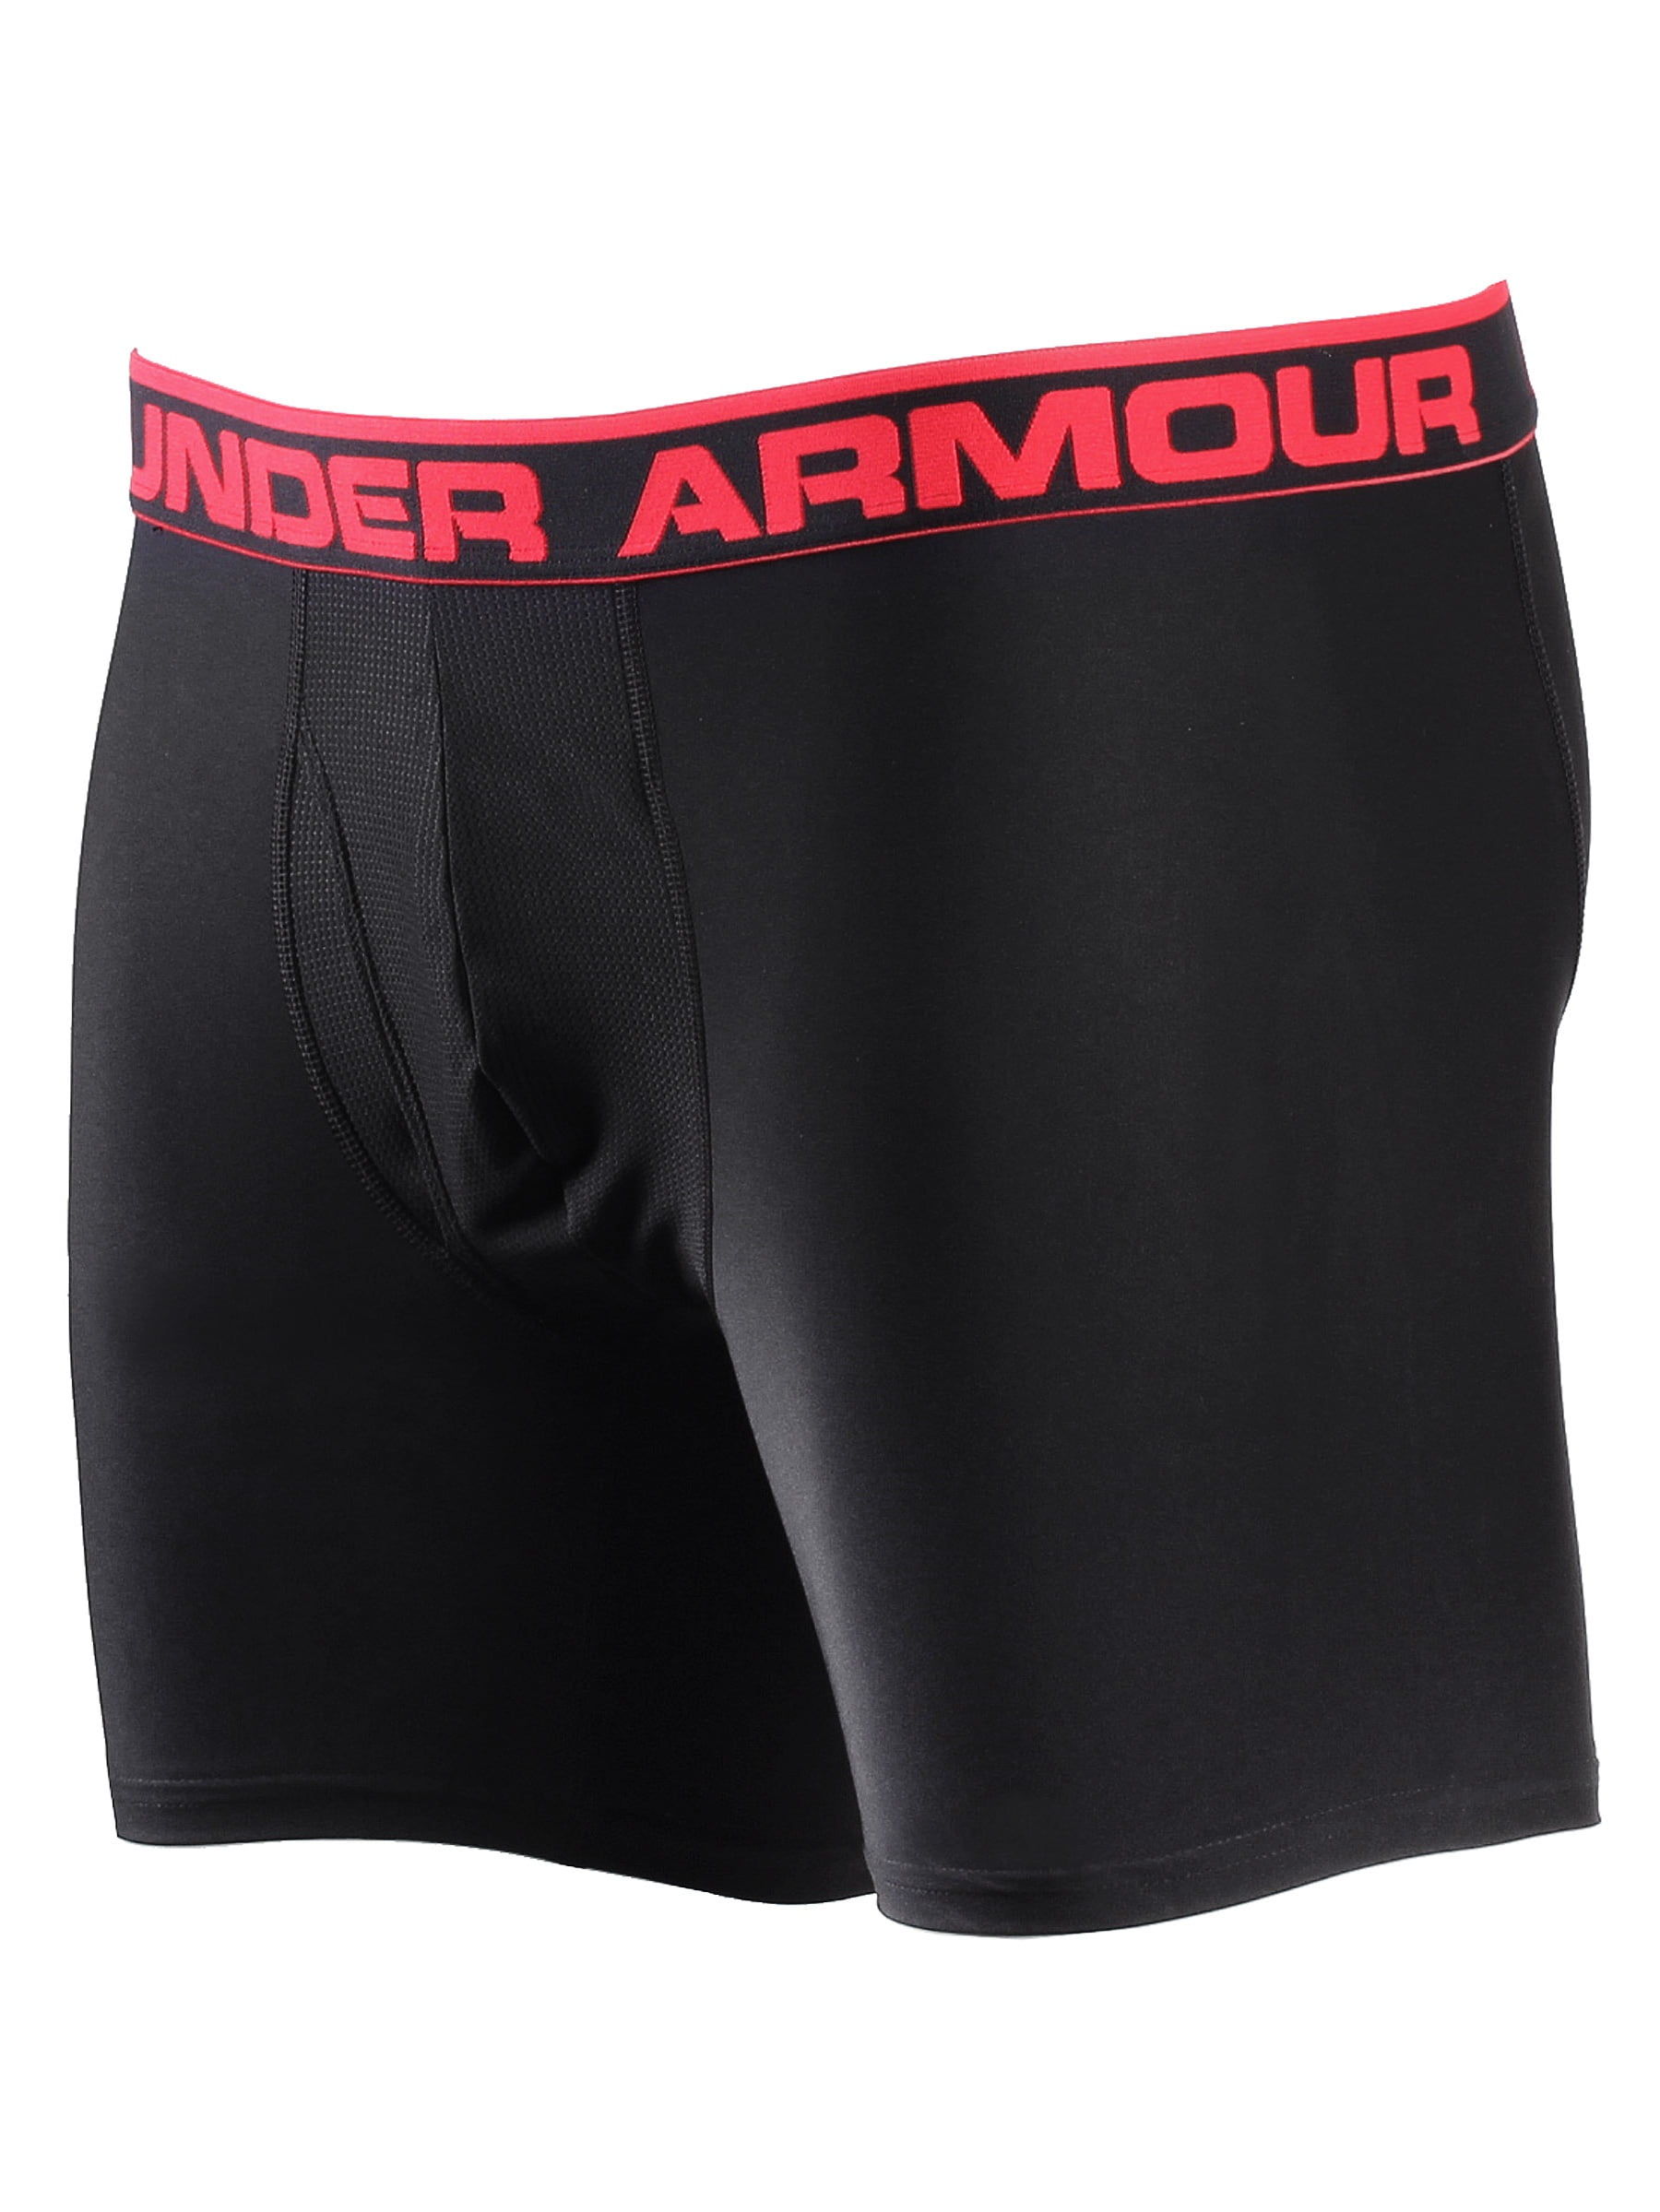 Men's Under Armour Underwear